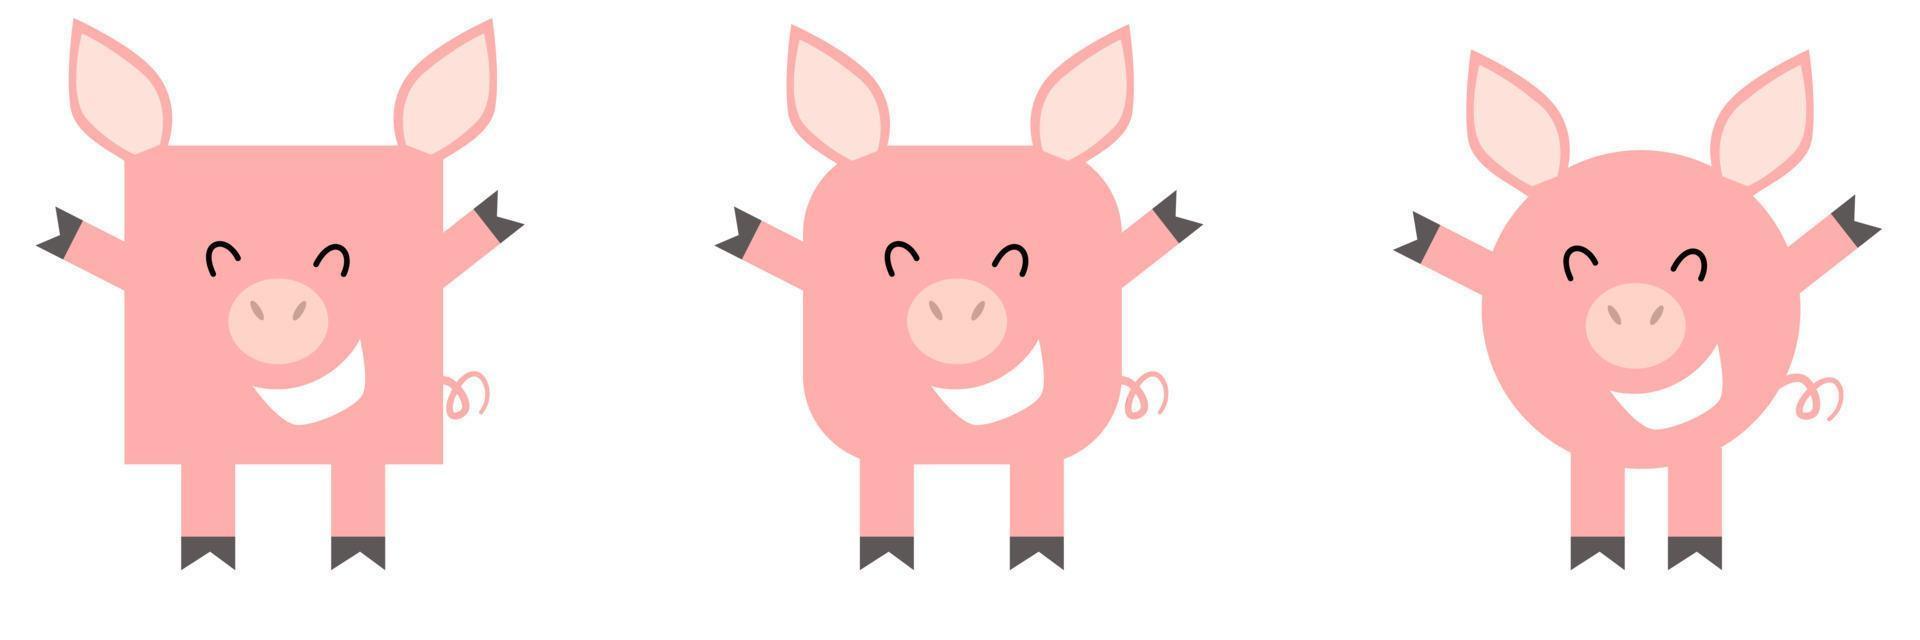 en uppsättning djur av fyrkantig och rund form. vektor illustration av en gris